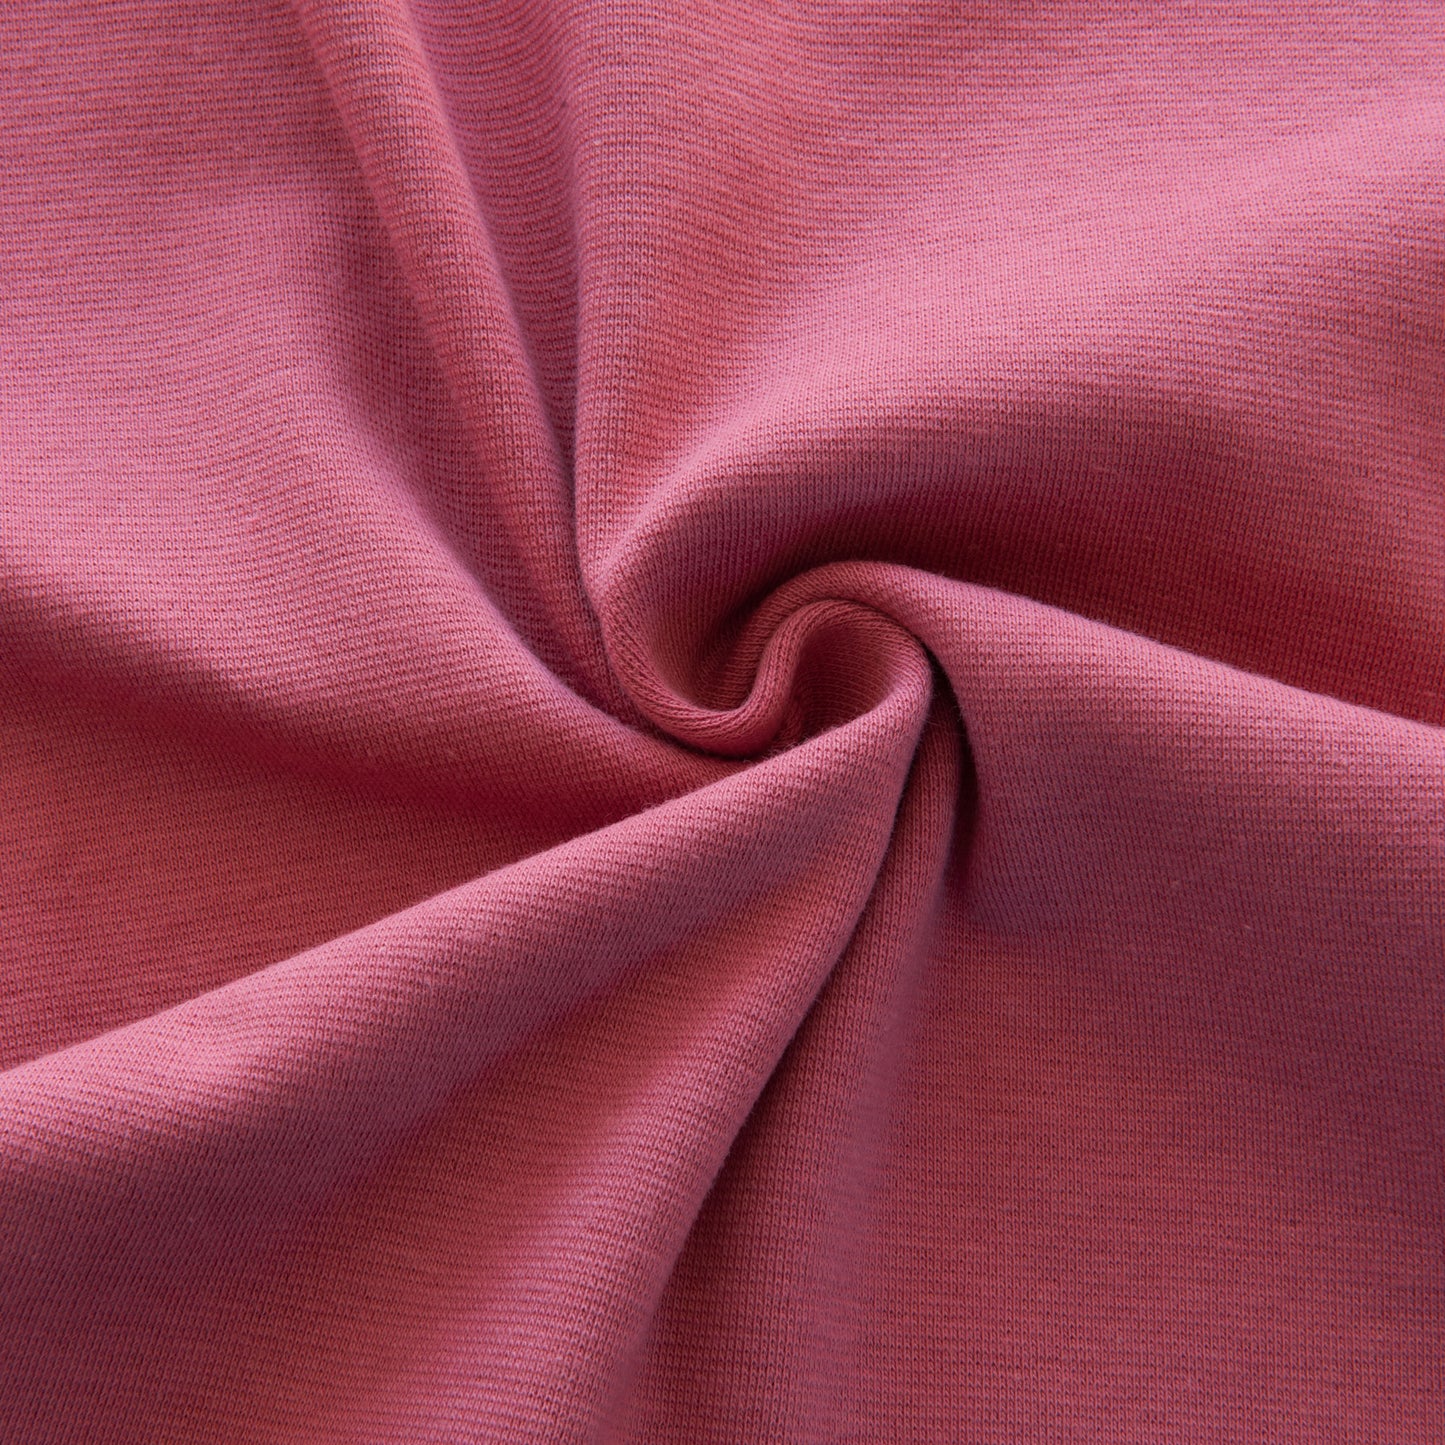 Tubular Ribbing Fabric in Dark Rose